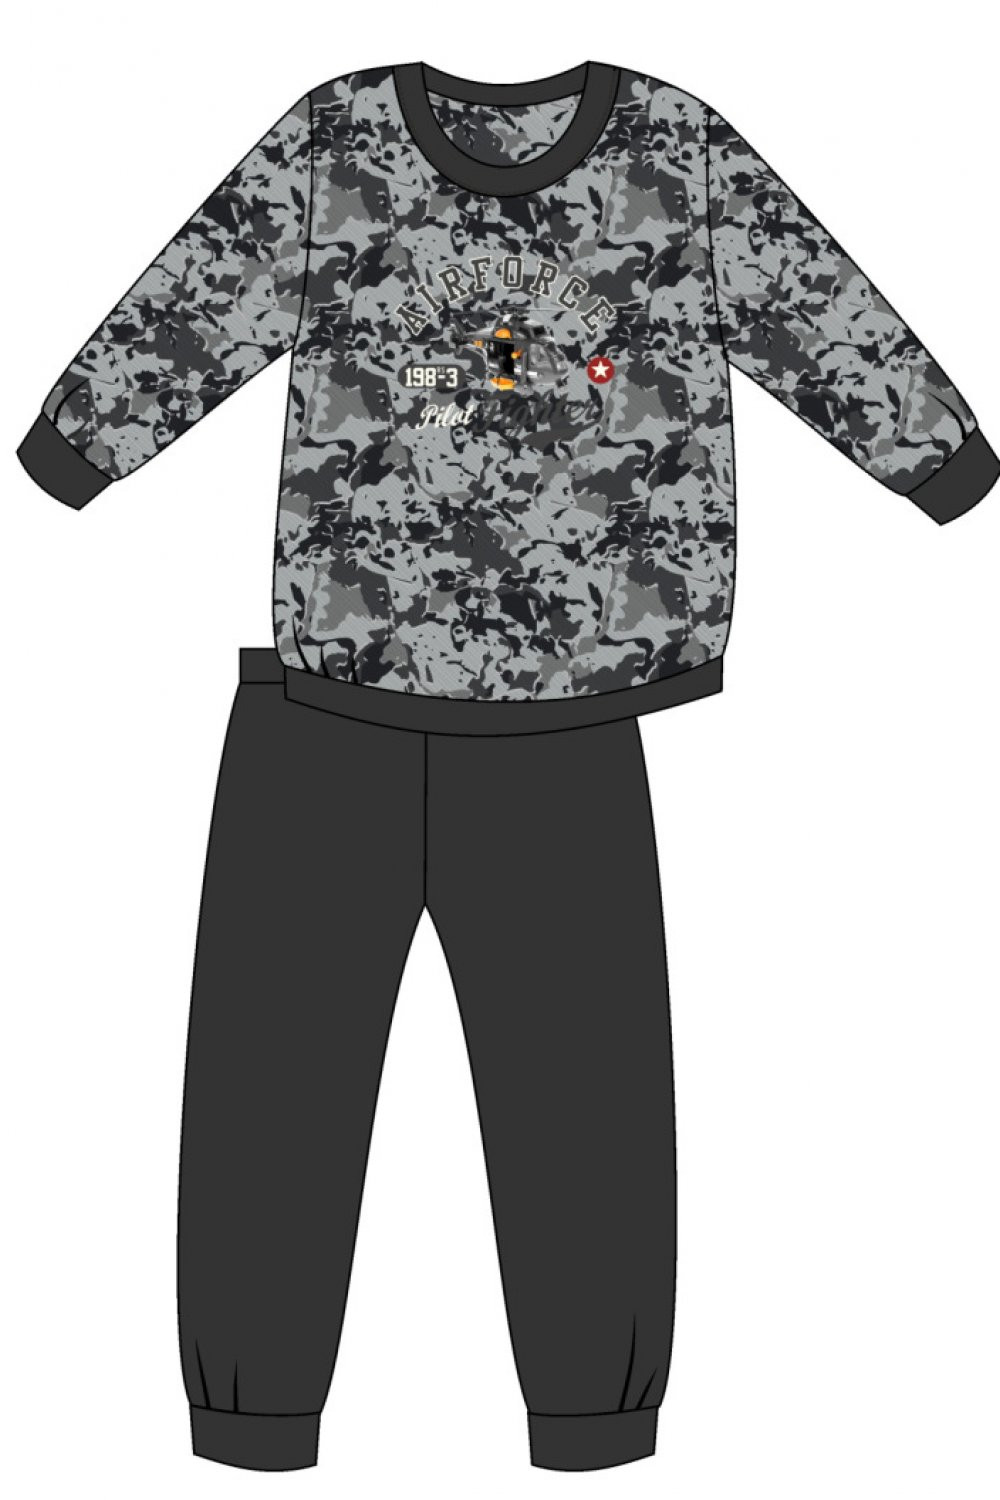 Chlapecké pyžamo 454/118 Air force - CORNETTE grafitová 134/140